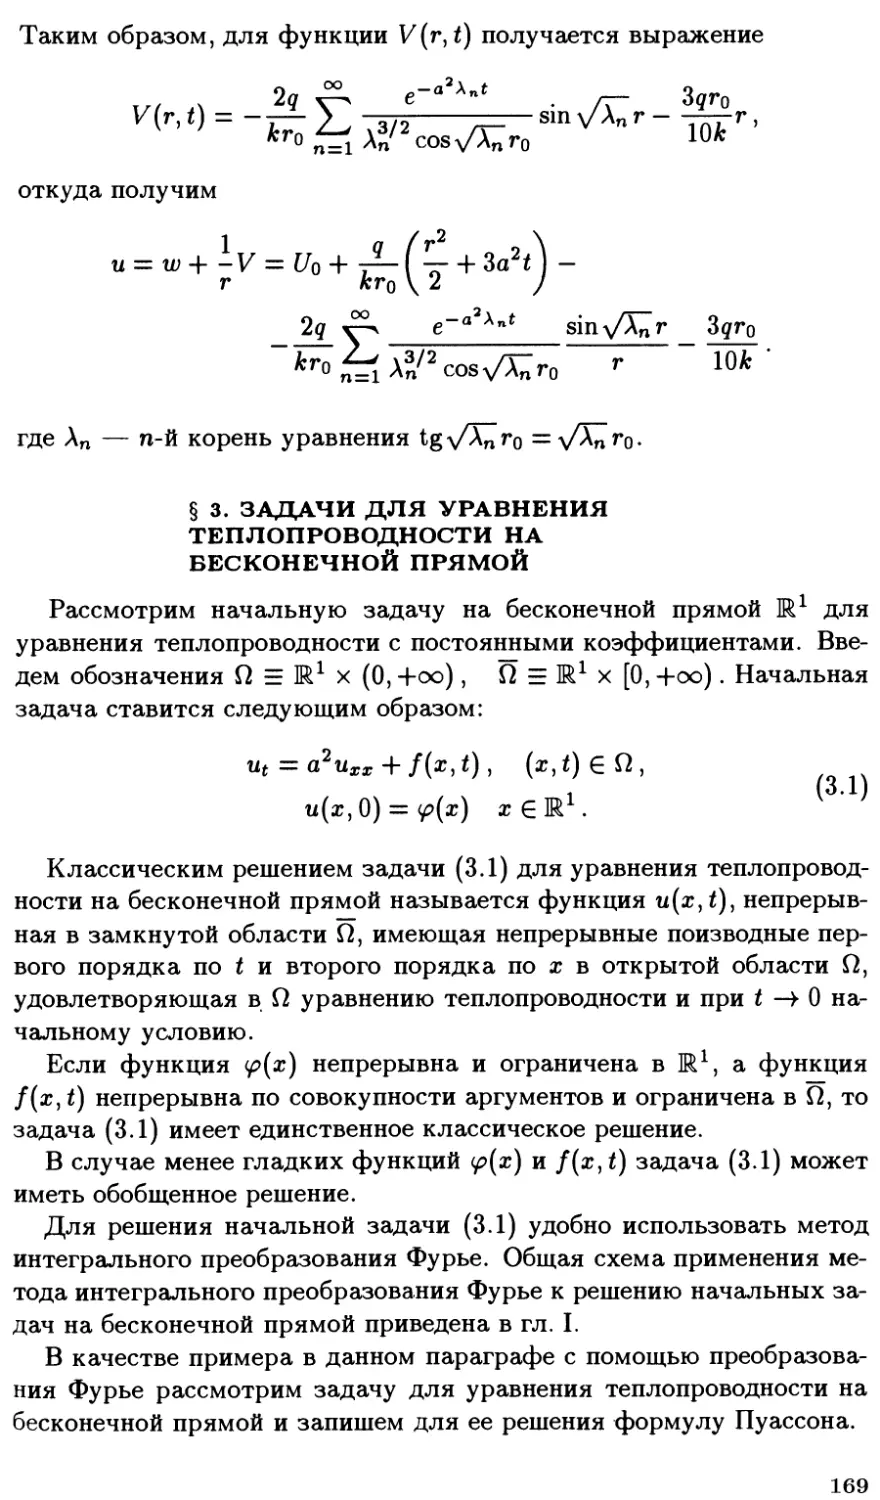 §3. Задачи для уравнения теплопроводности на бесконечной прямой